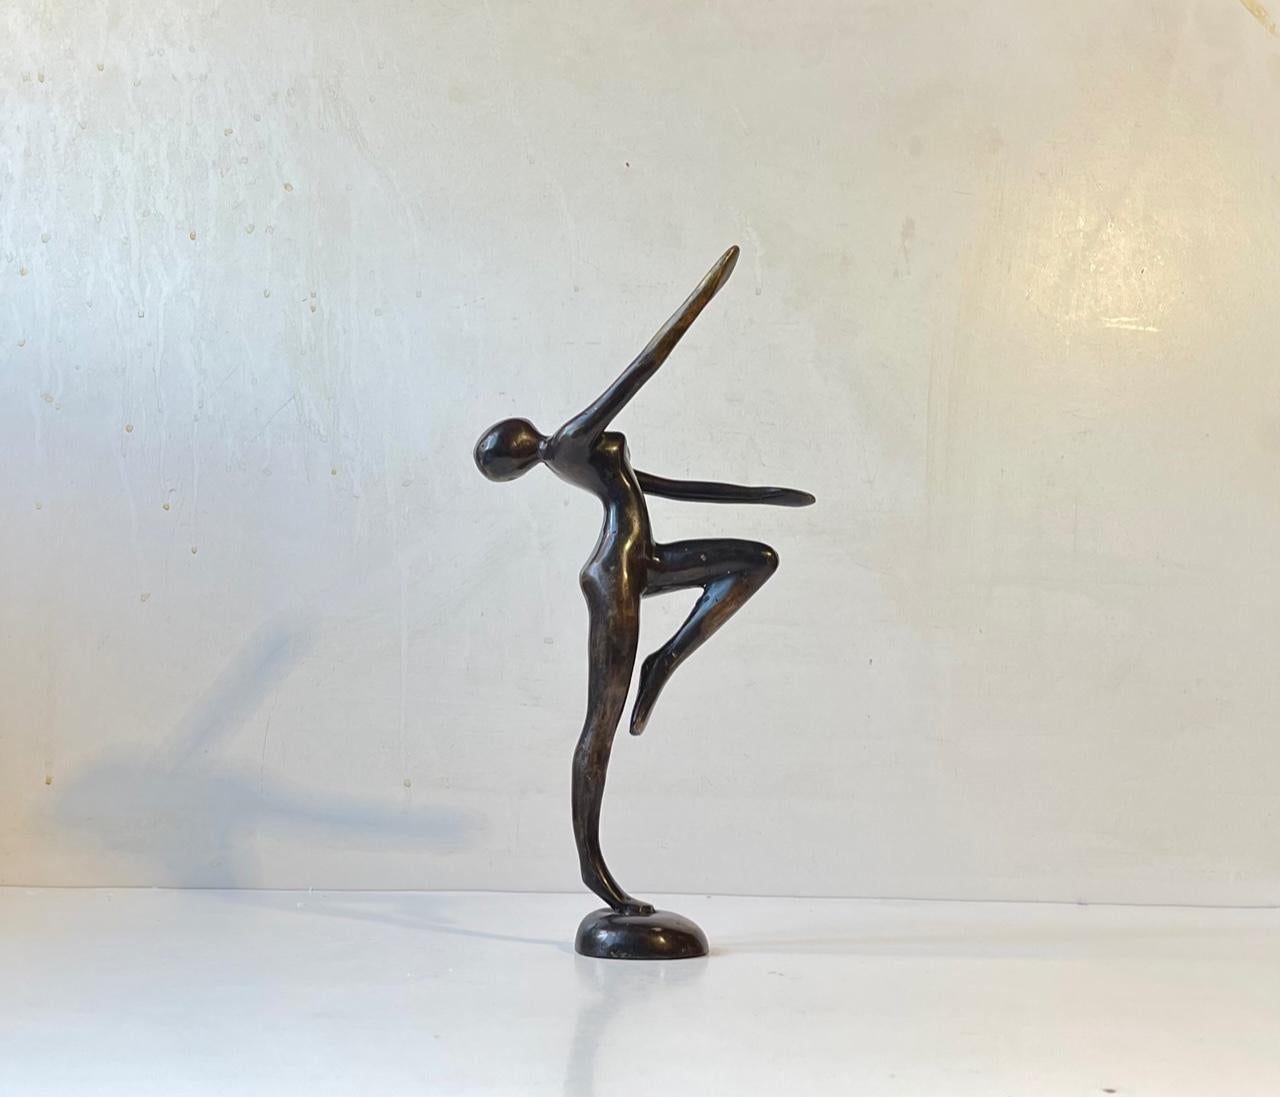 Sculpture androgyne inhabituelle en bronze patiné. Corps féminin et traits du visage sans expression. Fabricant scandinave inconnu, vers 1970. Aucune marque/signature. Dimensions : H : 29 cm, L : 15 cm, P : 6 cm.